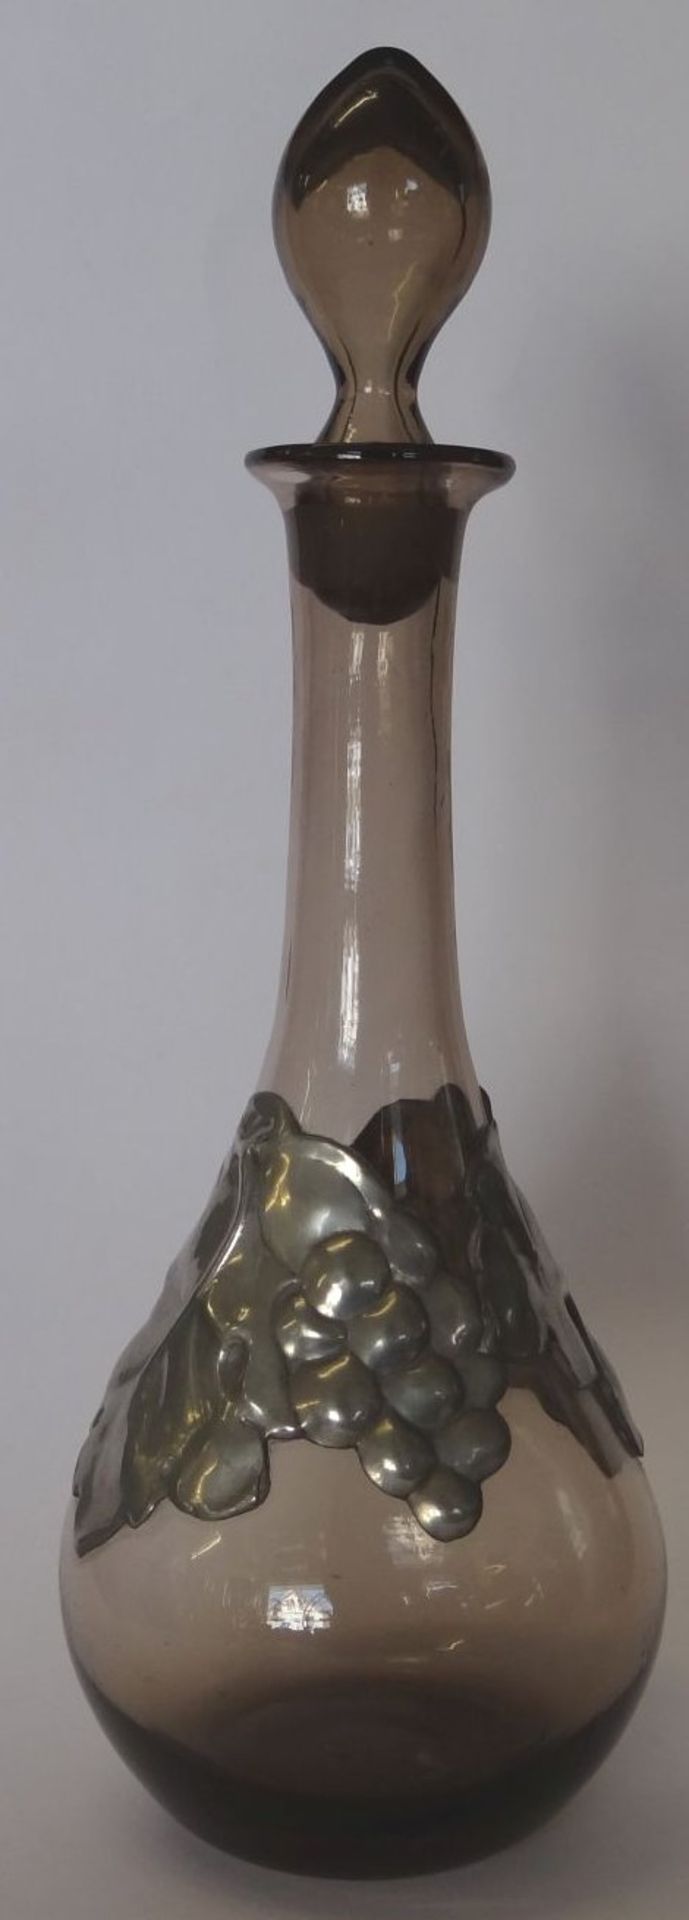 Rauchglas-Karaffe mit Zinnmontur, Weinlaubdekor, Hohlstöpsel, H-28 c - Bild 3 aus 4